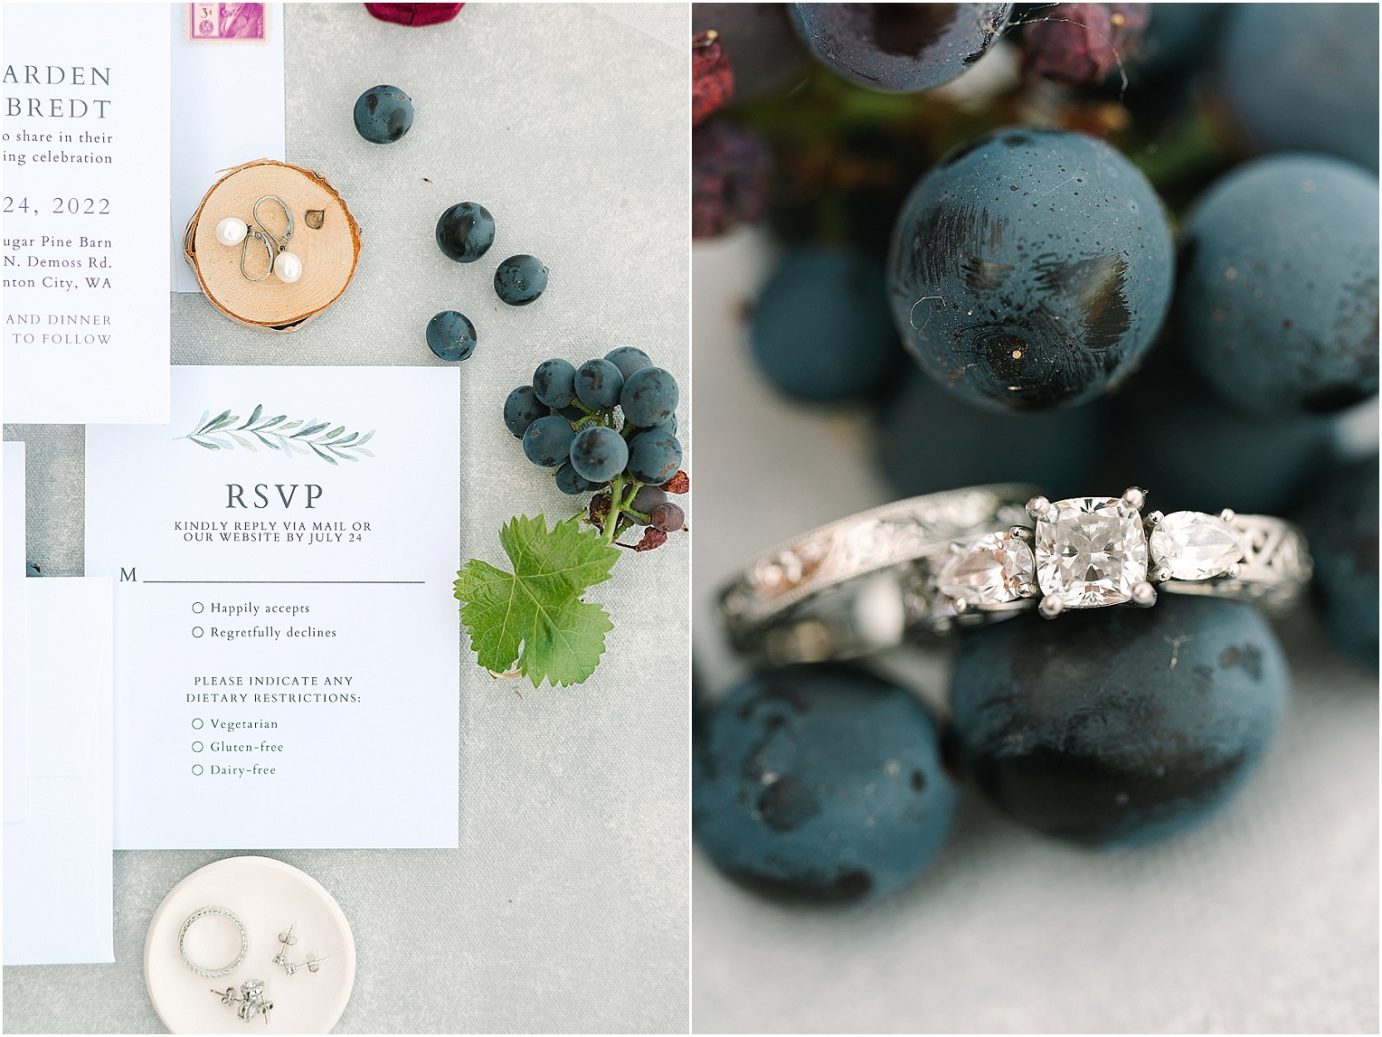 Wedding at Sugar Pine Barn - invitation and ring shot with wine grapes